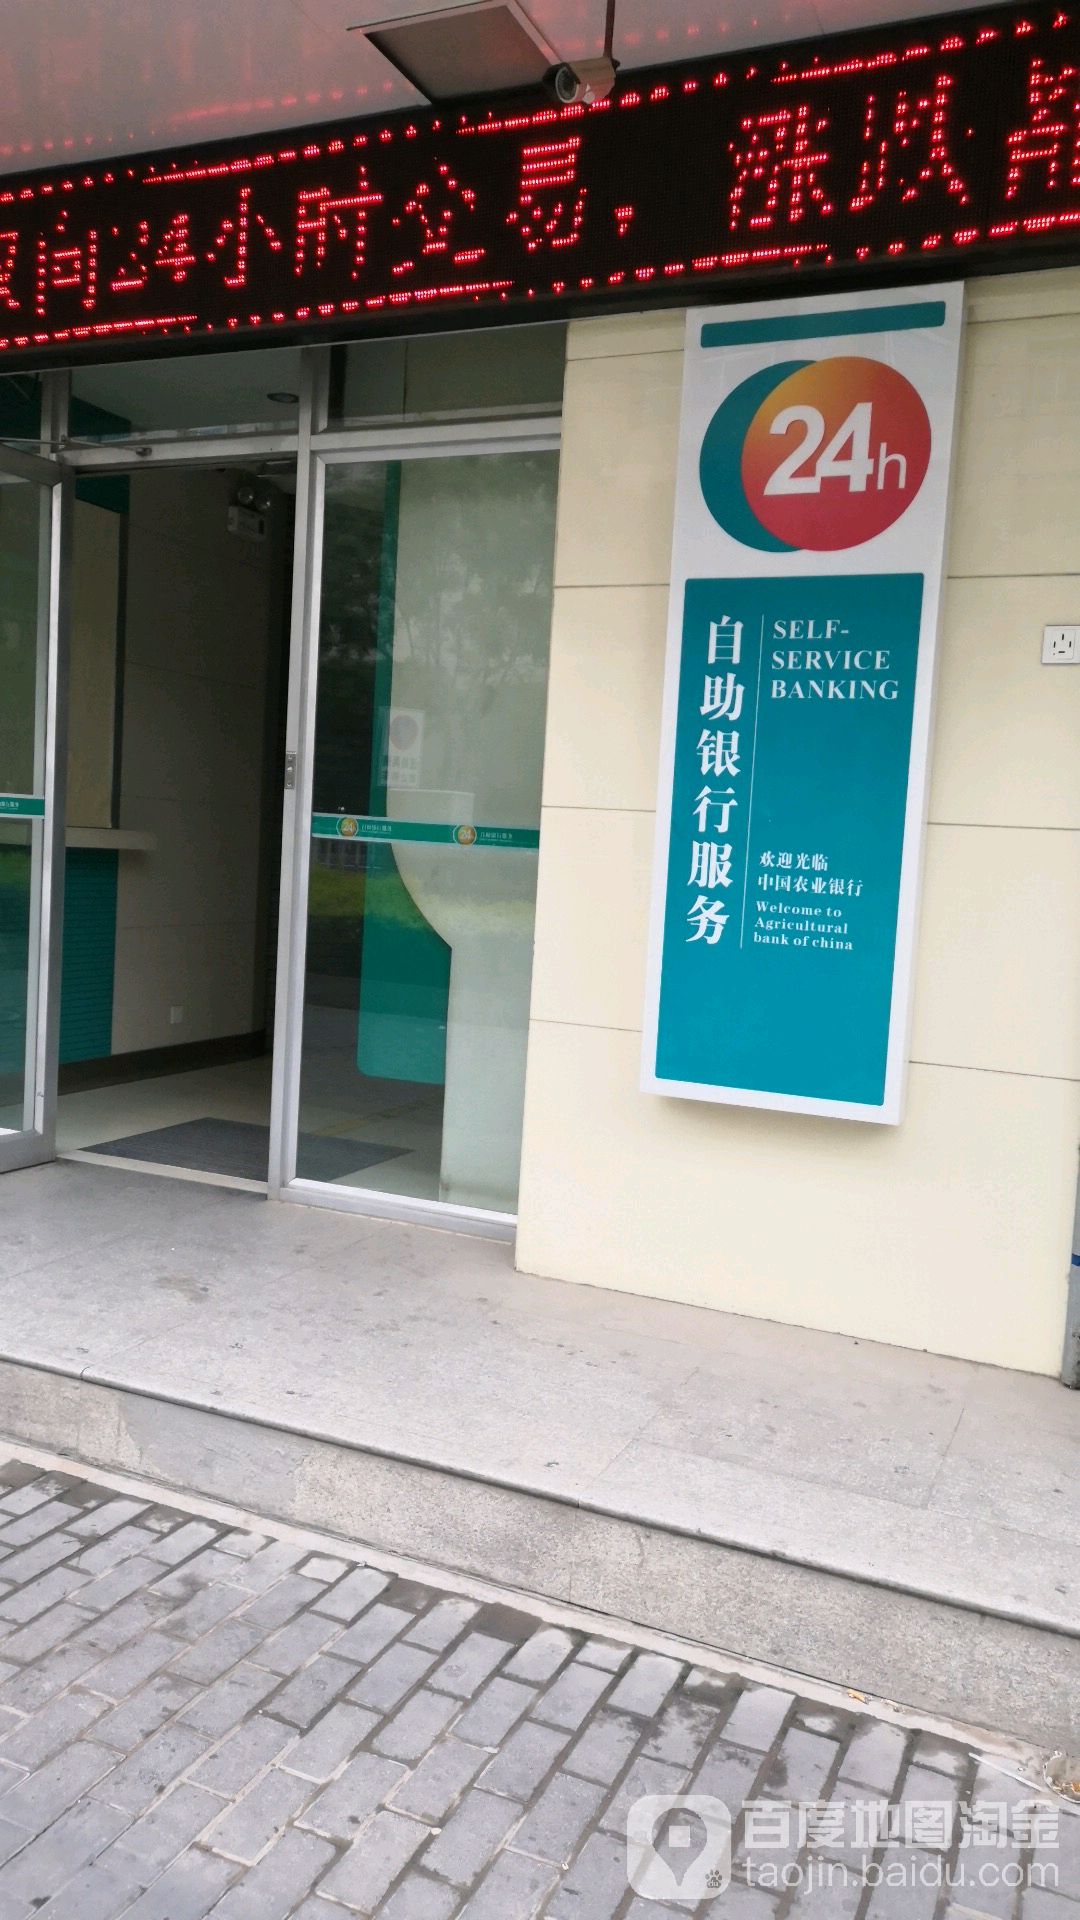 中國農業銀行24小時自助銀行(天水永慶路支行)